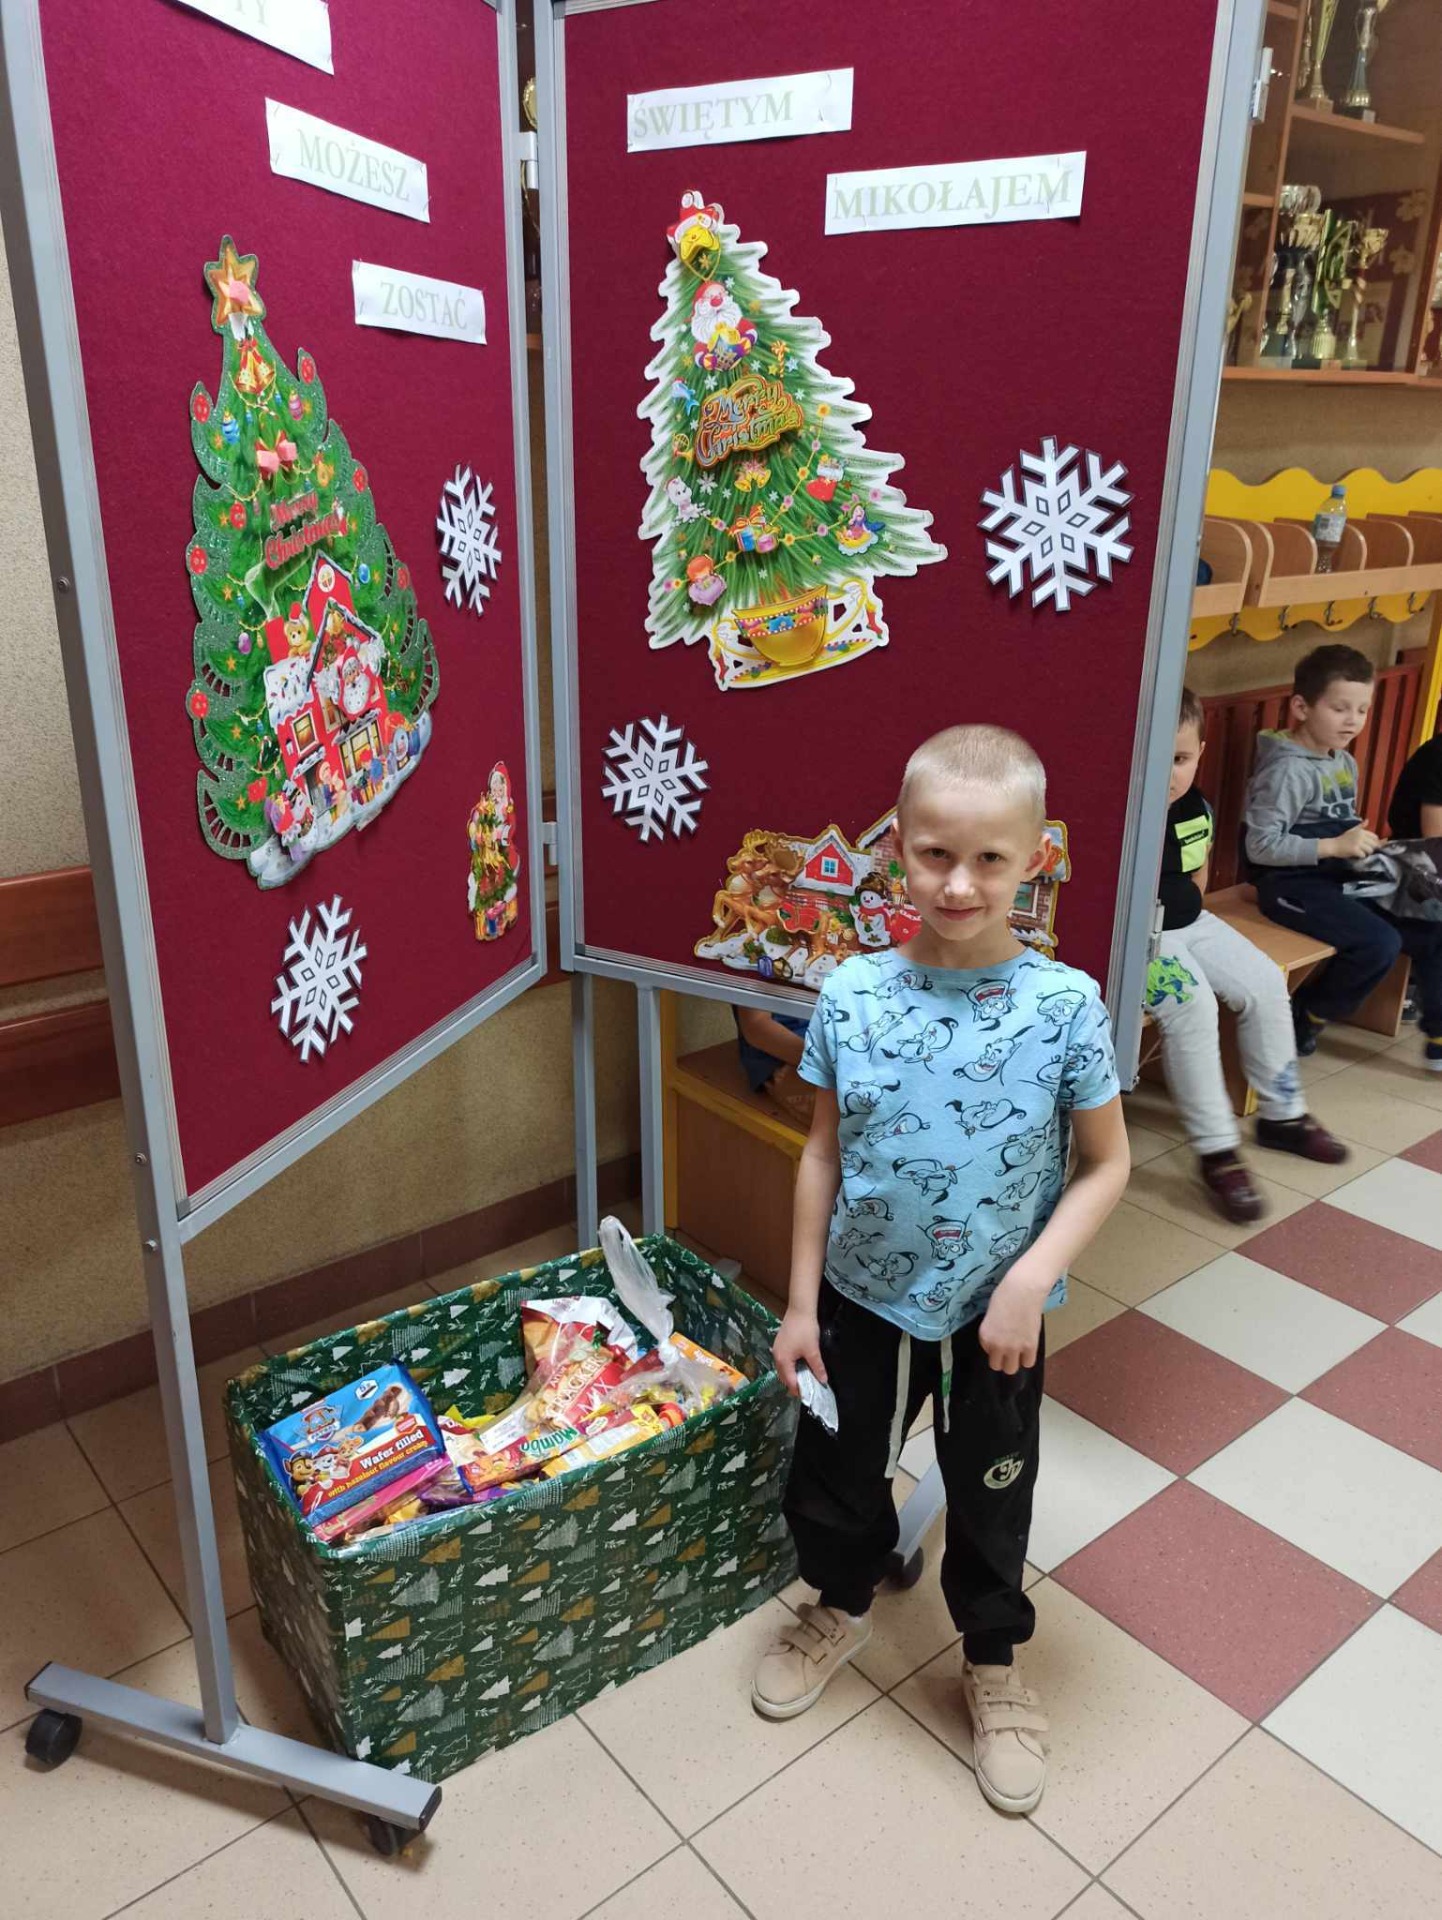 Dzieci wrzucają słodkie upominki do pudełka z darami obok gazetki z napisem "I Ty możesz zostać Świętym Mikołajem".